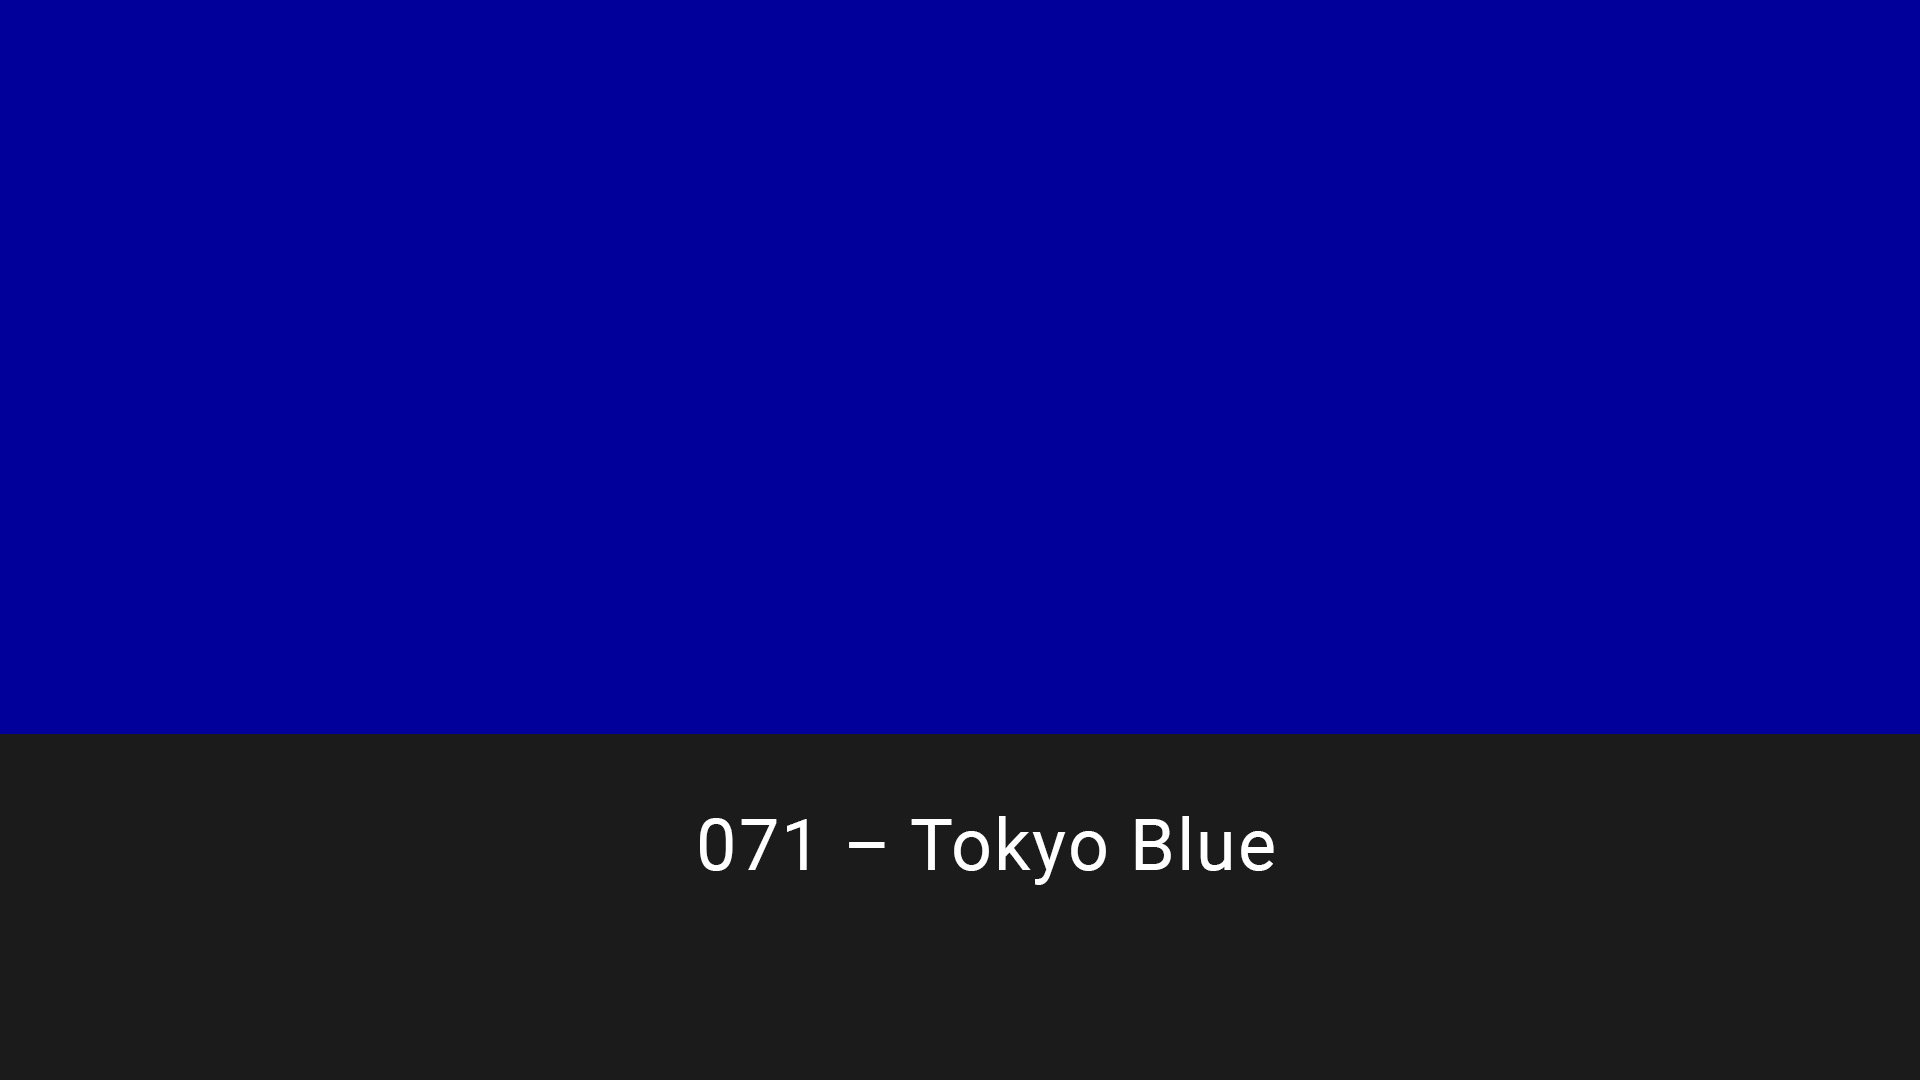 Cotech filters 071 Tokyo Blue